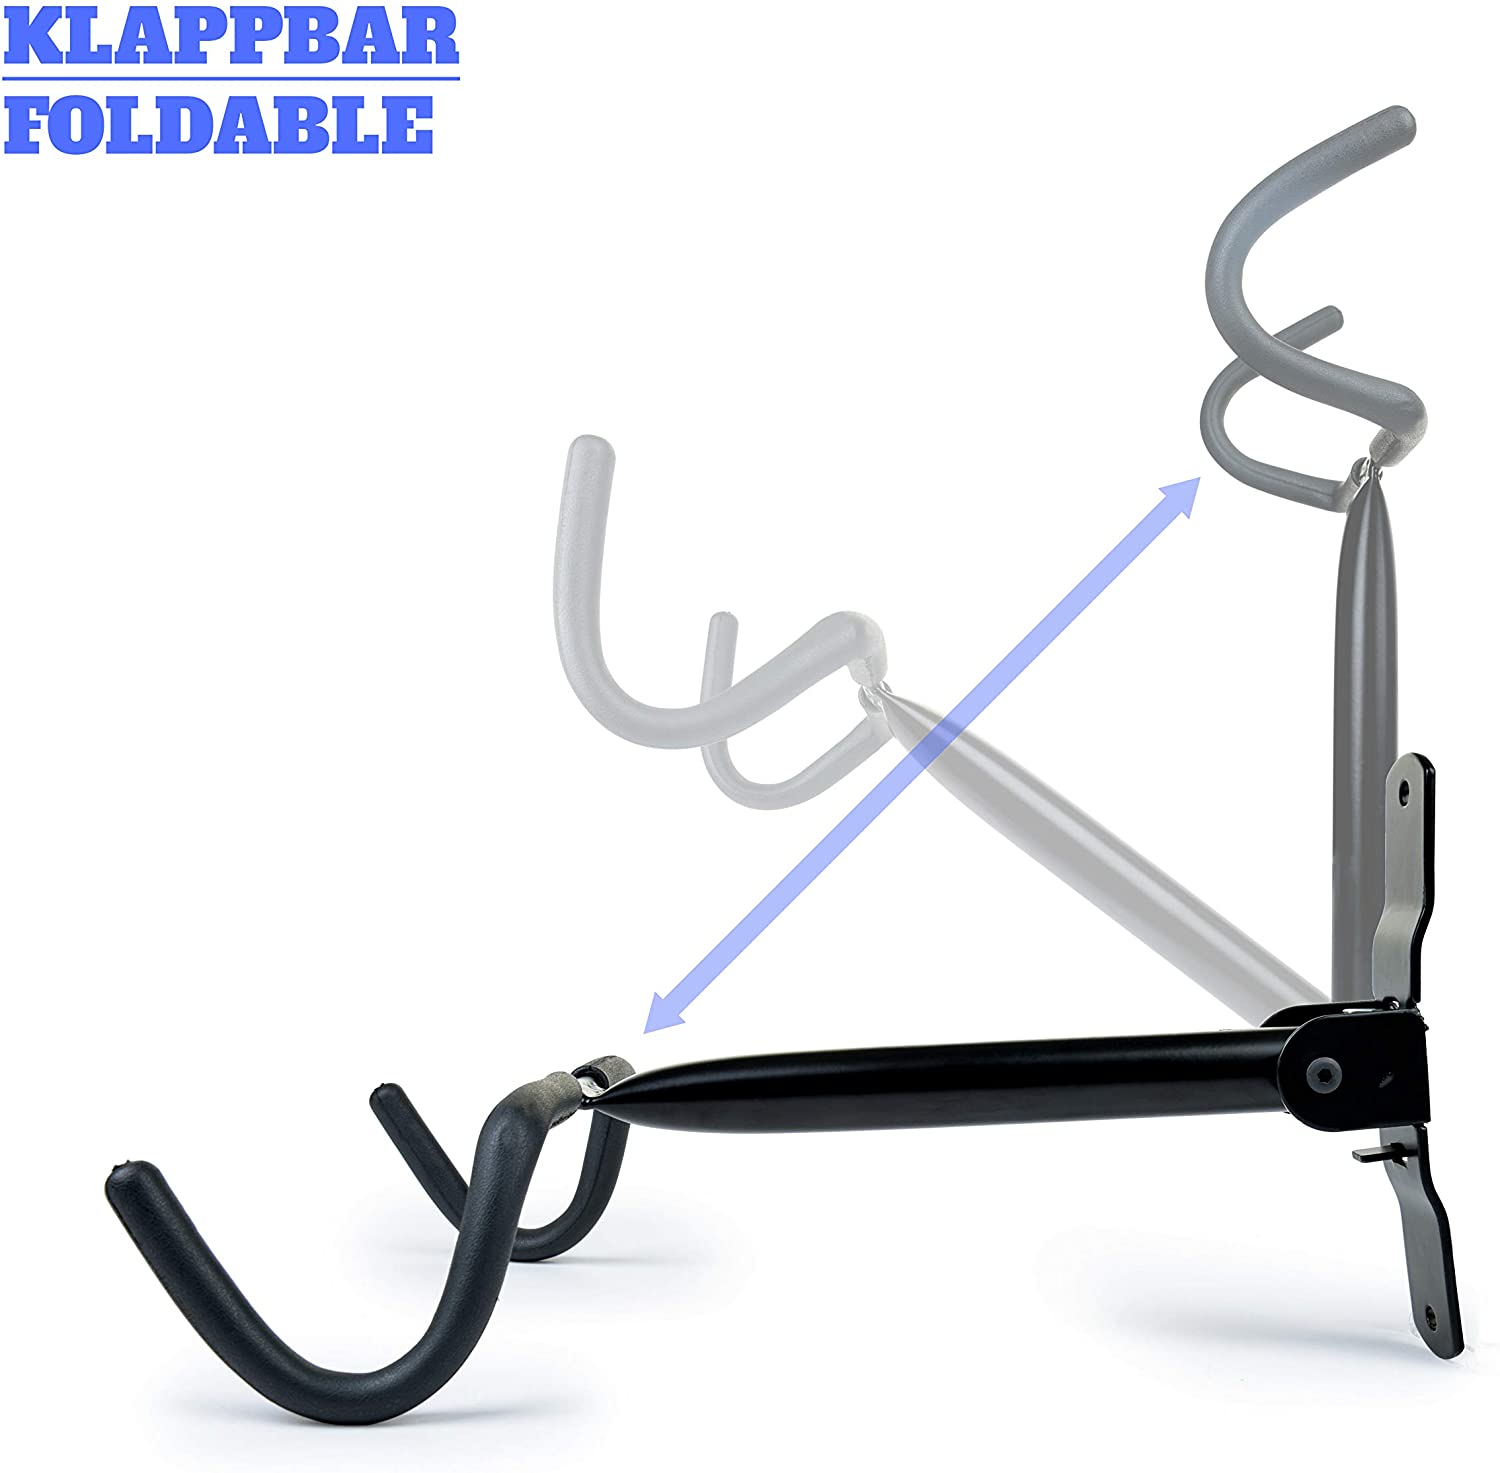  Charles Daily Soporte Bicicletas Pared Plegable - Colgador de Bici para Pared con Protección del Cuadro - Ganchos para Colgar Bicicletas - Negro 